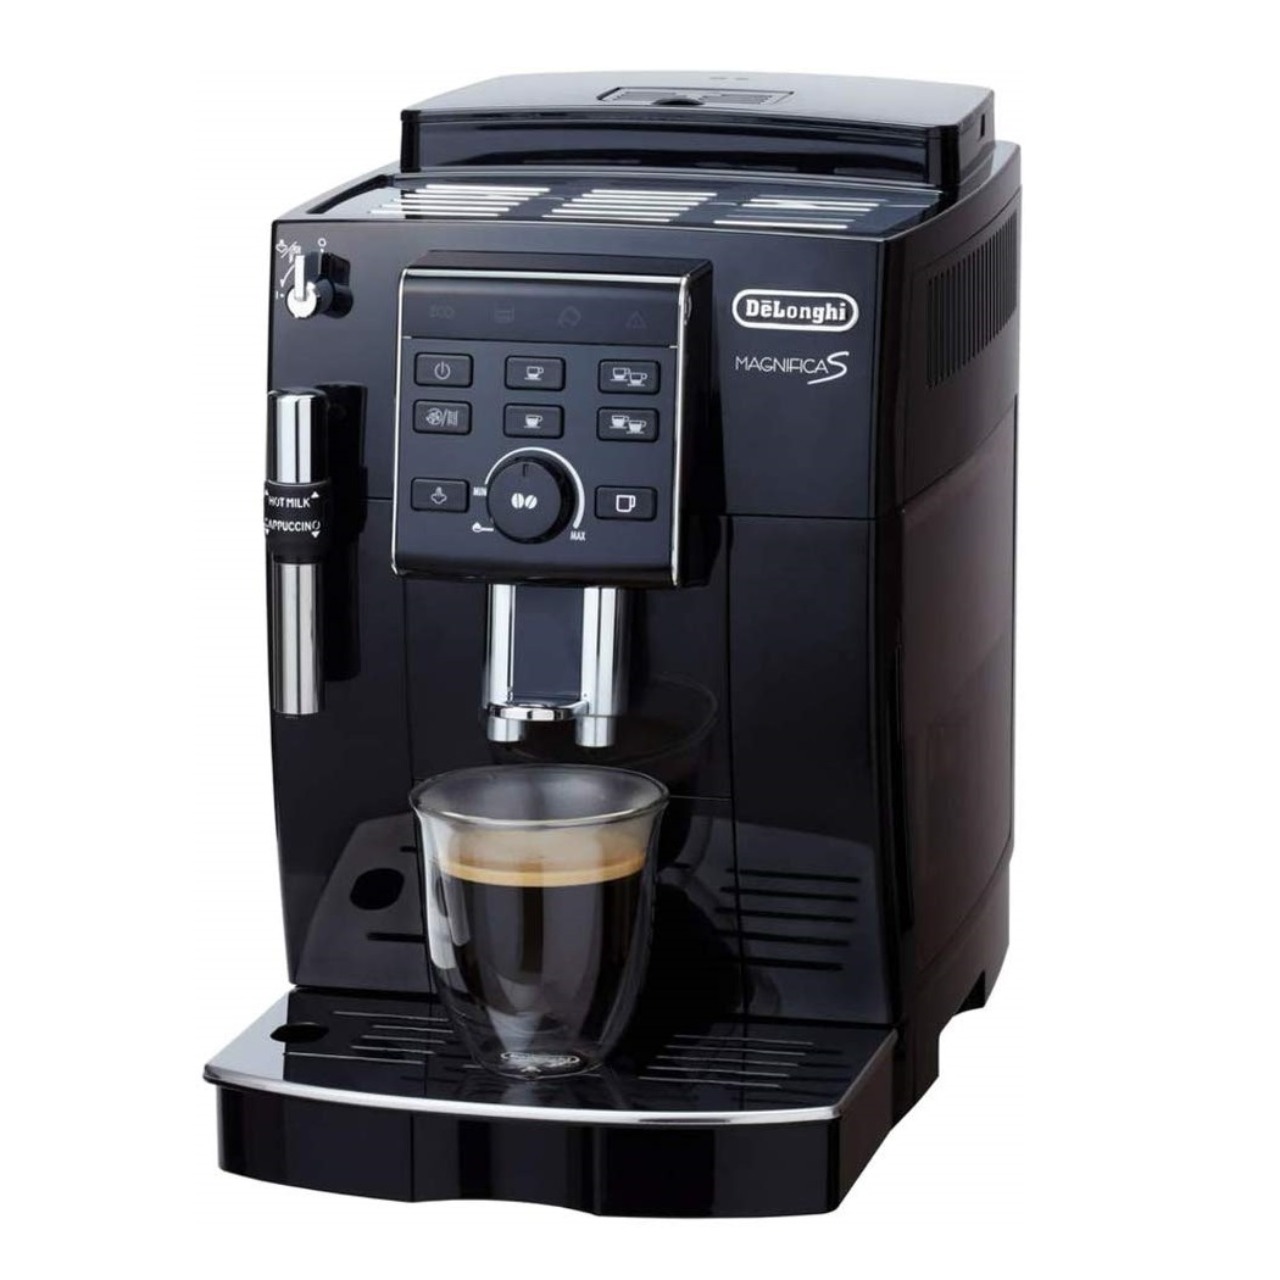 デロンギマグニフィカS ECAM23120BN全自動コーヒーメーカー